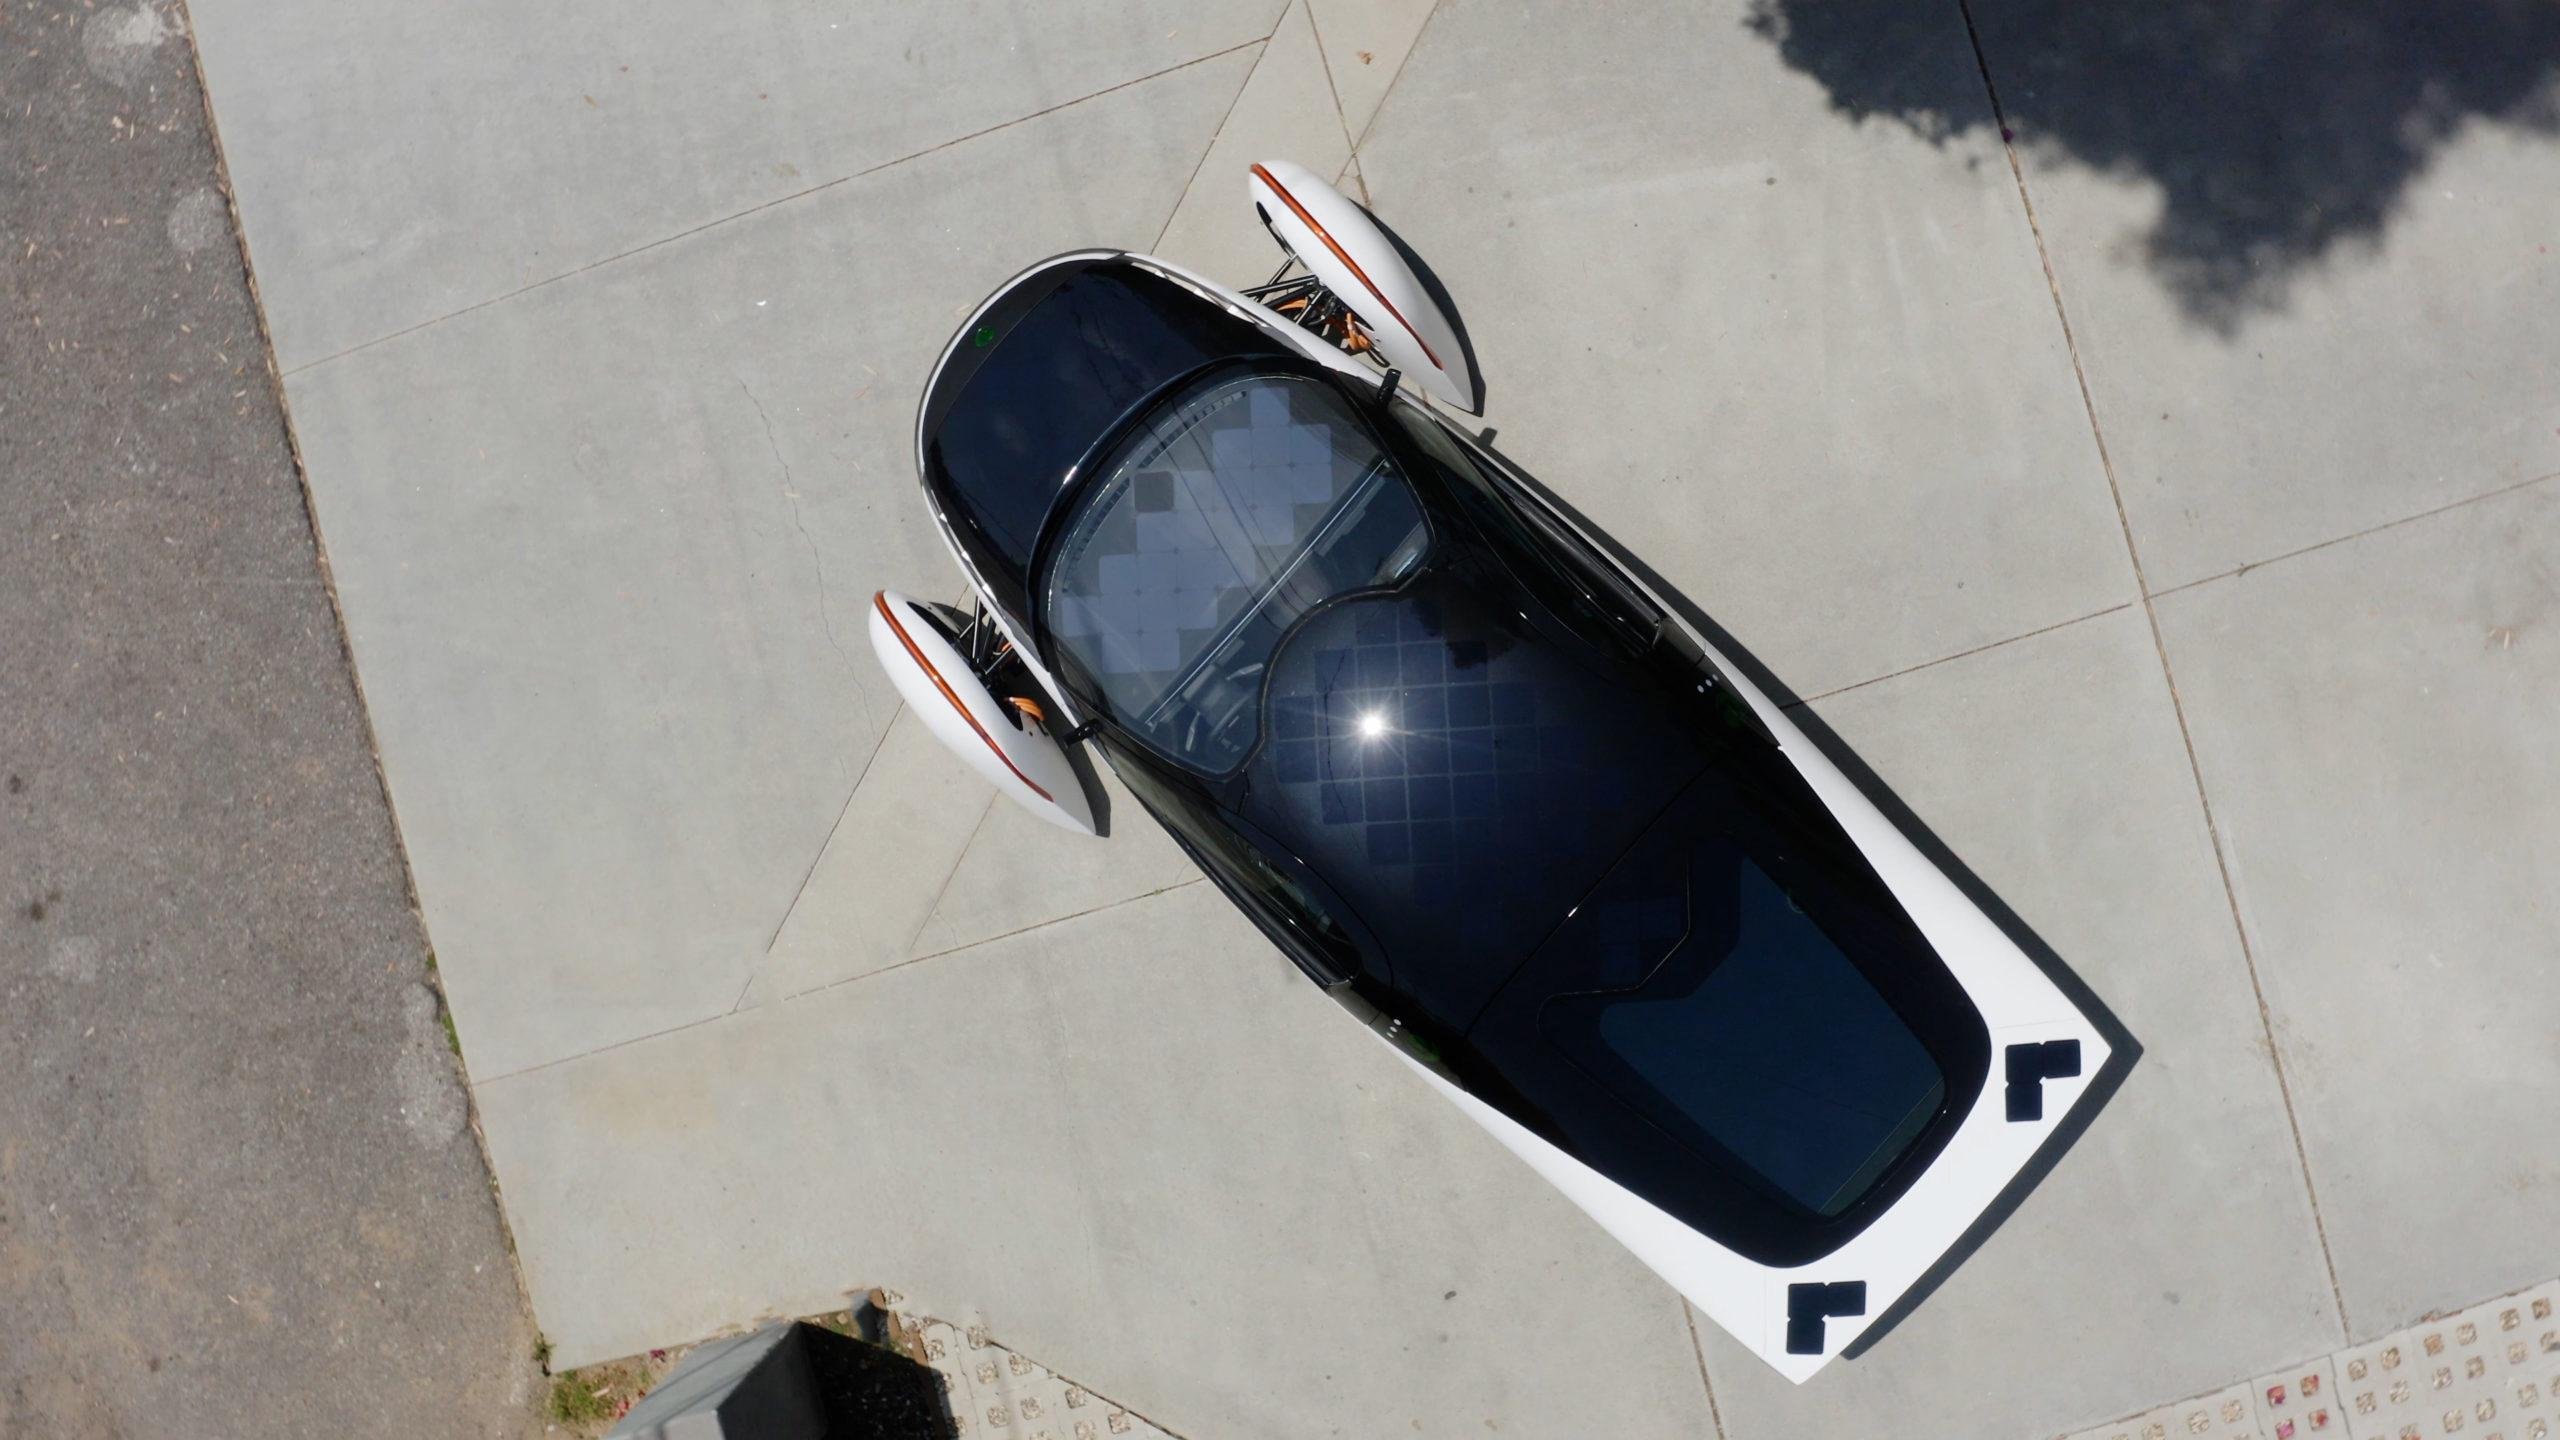 Com os paineis solares embutidos, carro promete autonomia de 64 quilômetro por dia (Fonte: Aptera/divulgação)